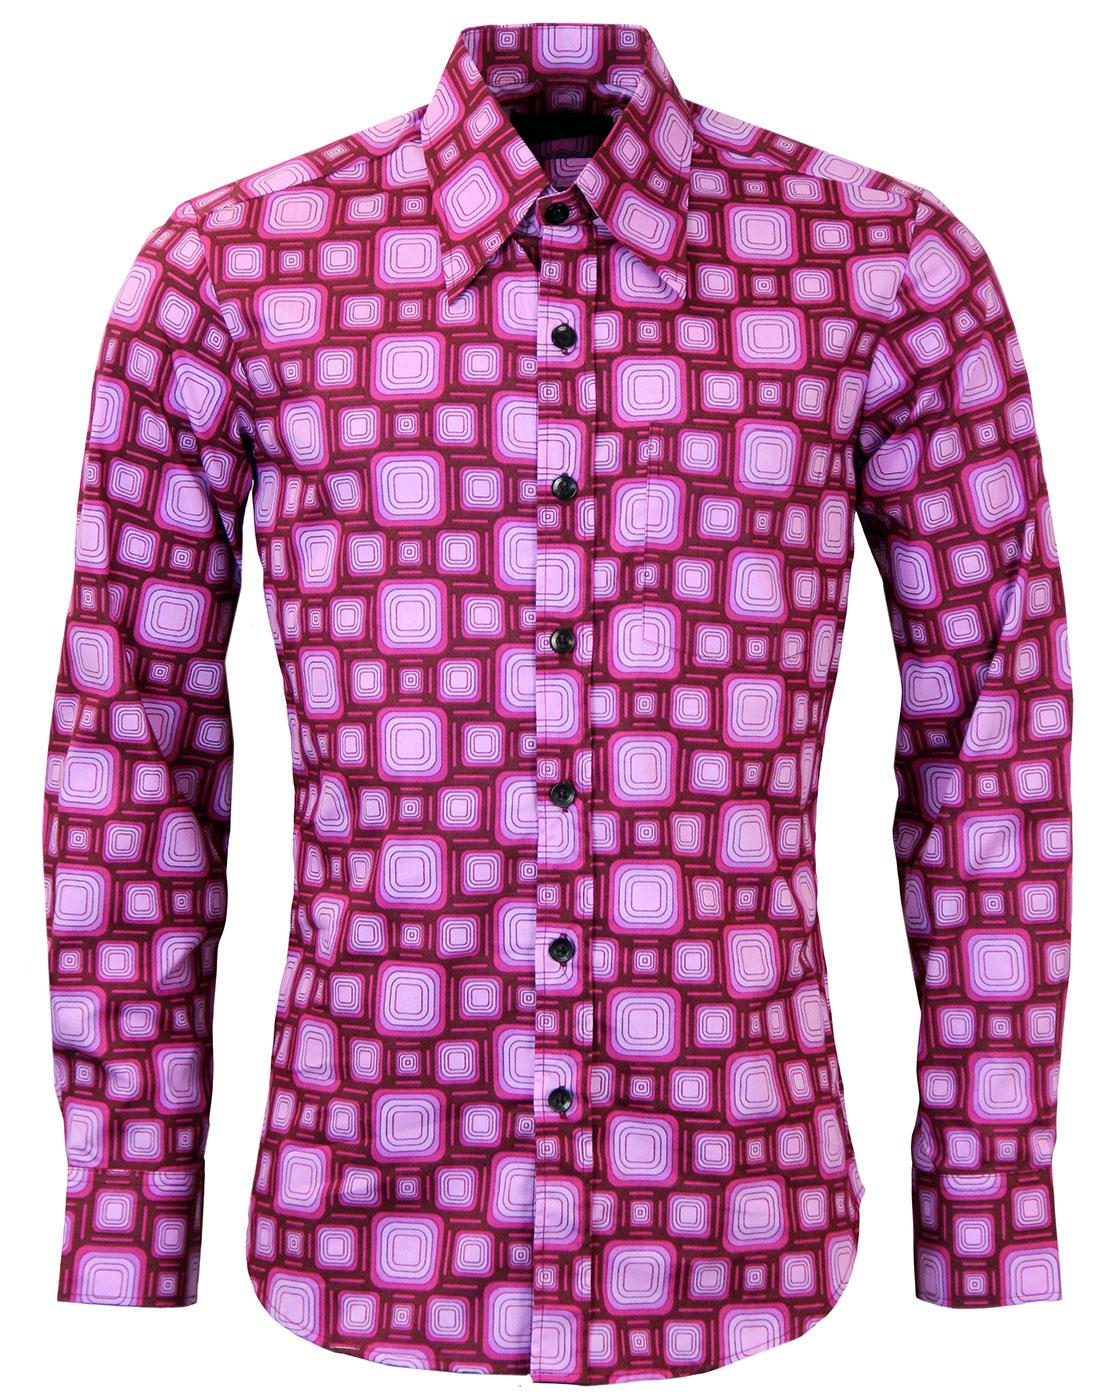 Box Tops CHENASKI Retro 70s Geometric Shirt BORDO